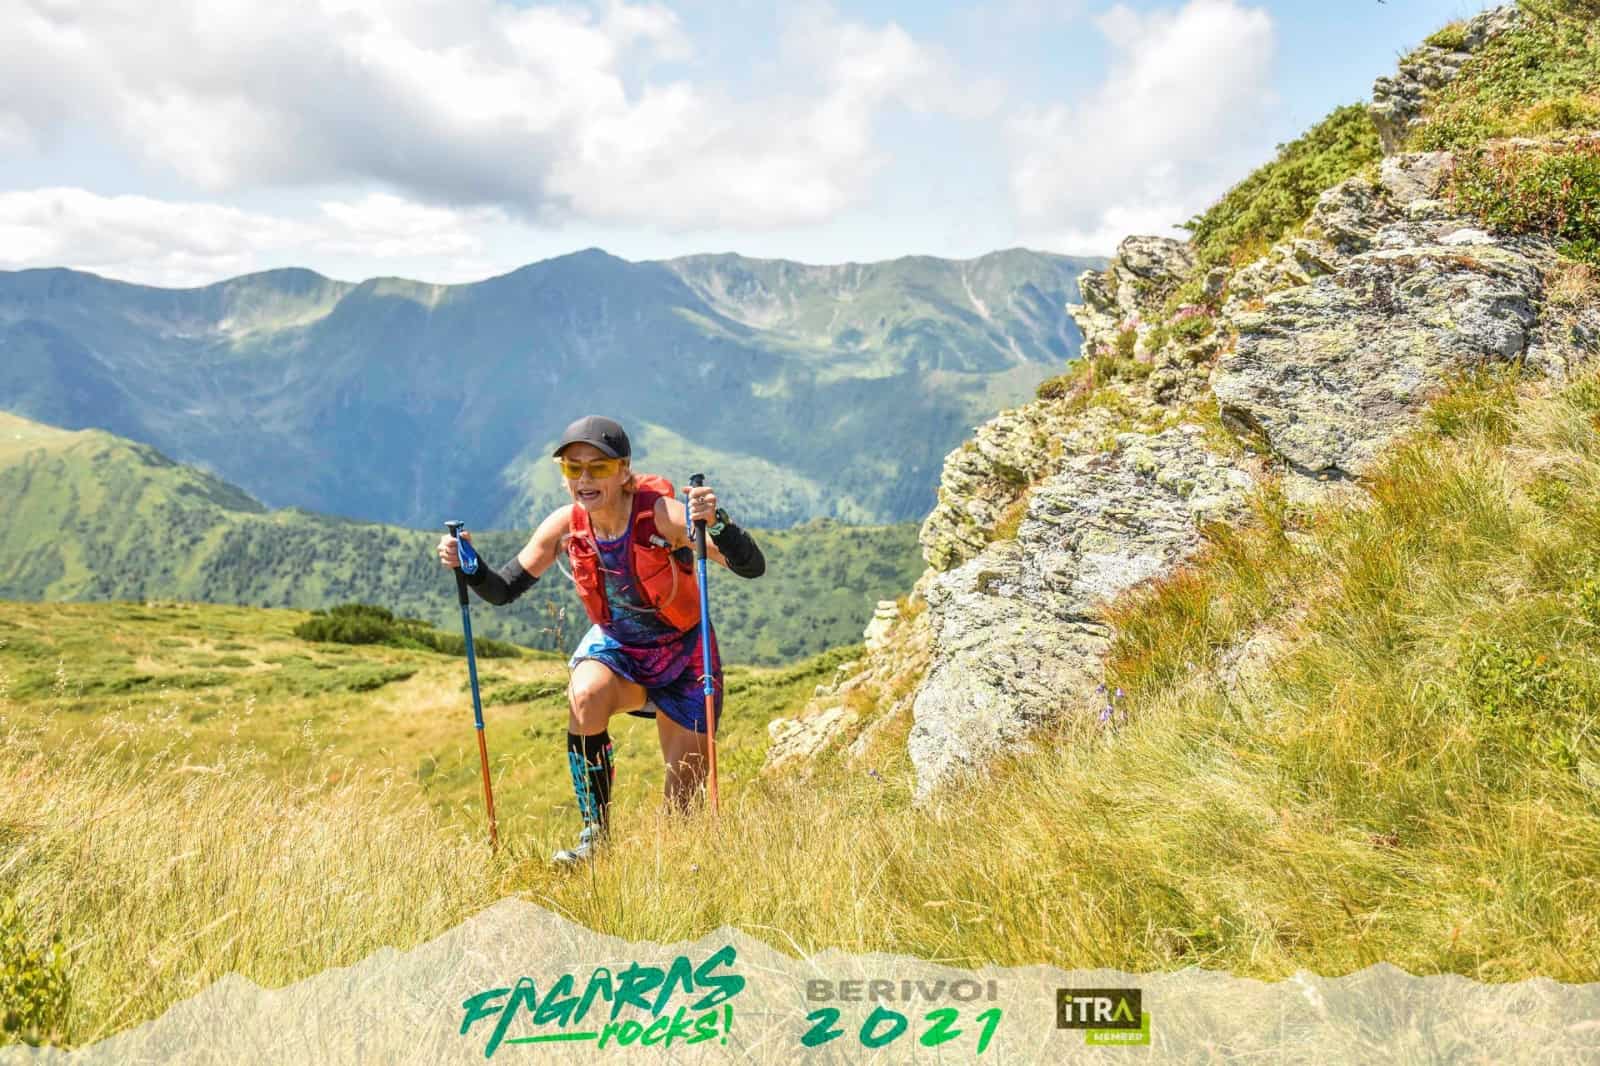 sibianca ghizela vonica, campioană europeană la alergare montană: „românia oferă cele mai spectaculoase peisaje”